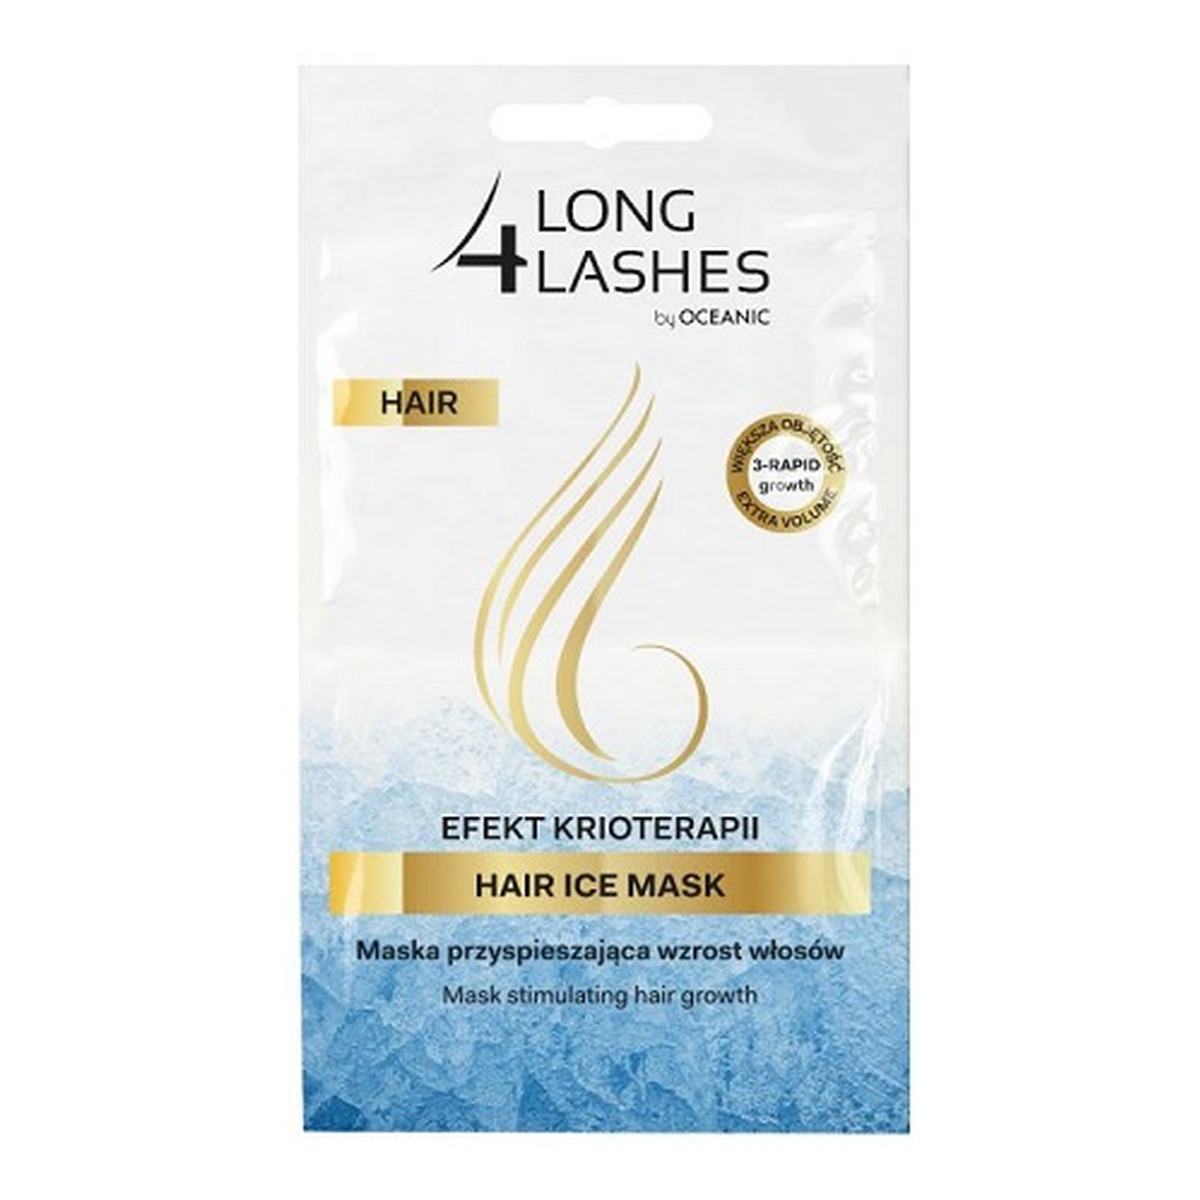 AA Long 4 Lashes Hair Ice Mask efekt krioterapii maska przyspieszająca wzrost włosów 2x6ml 6ml